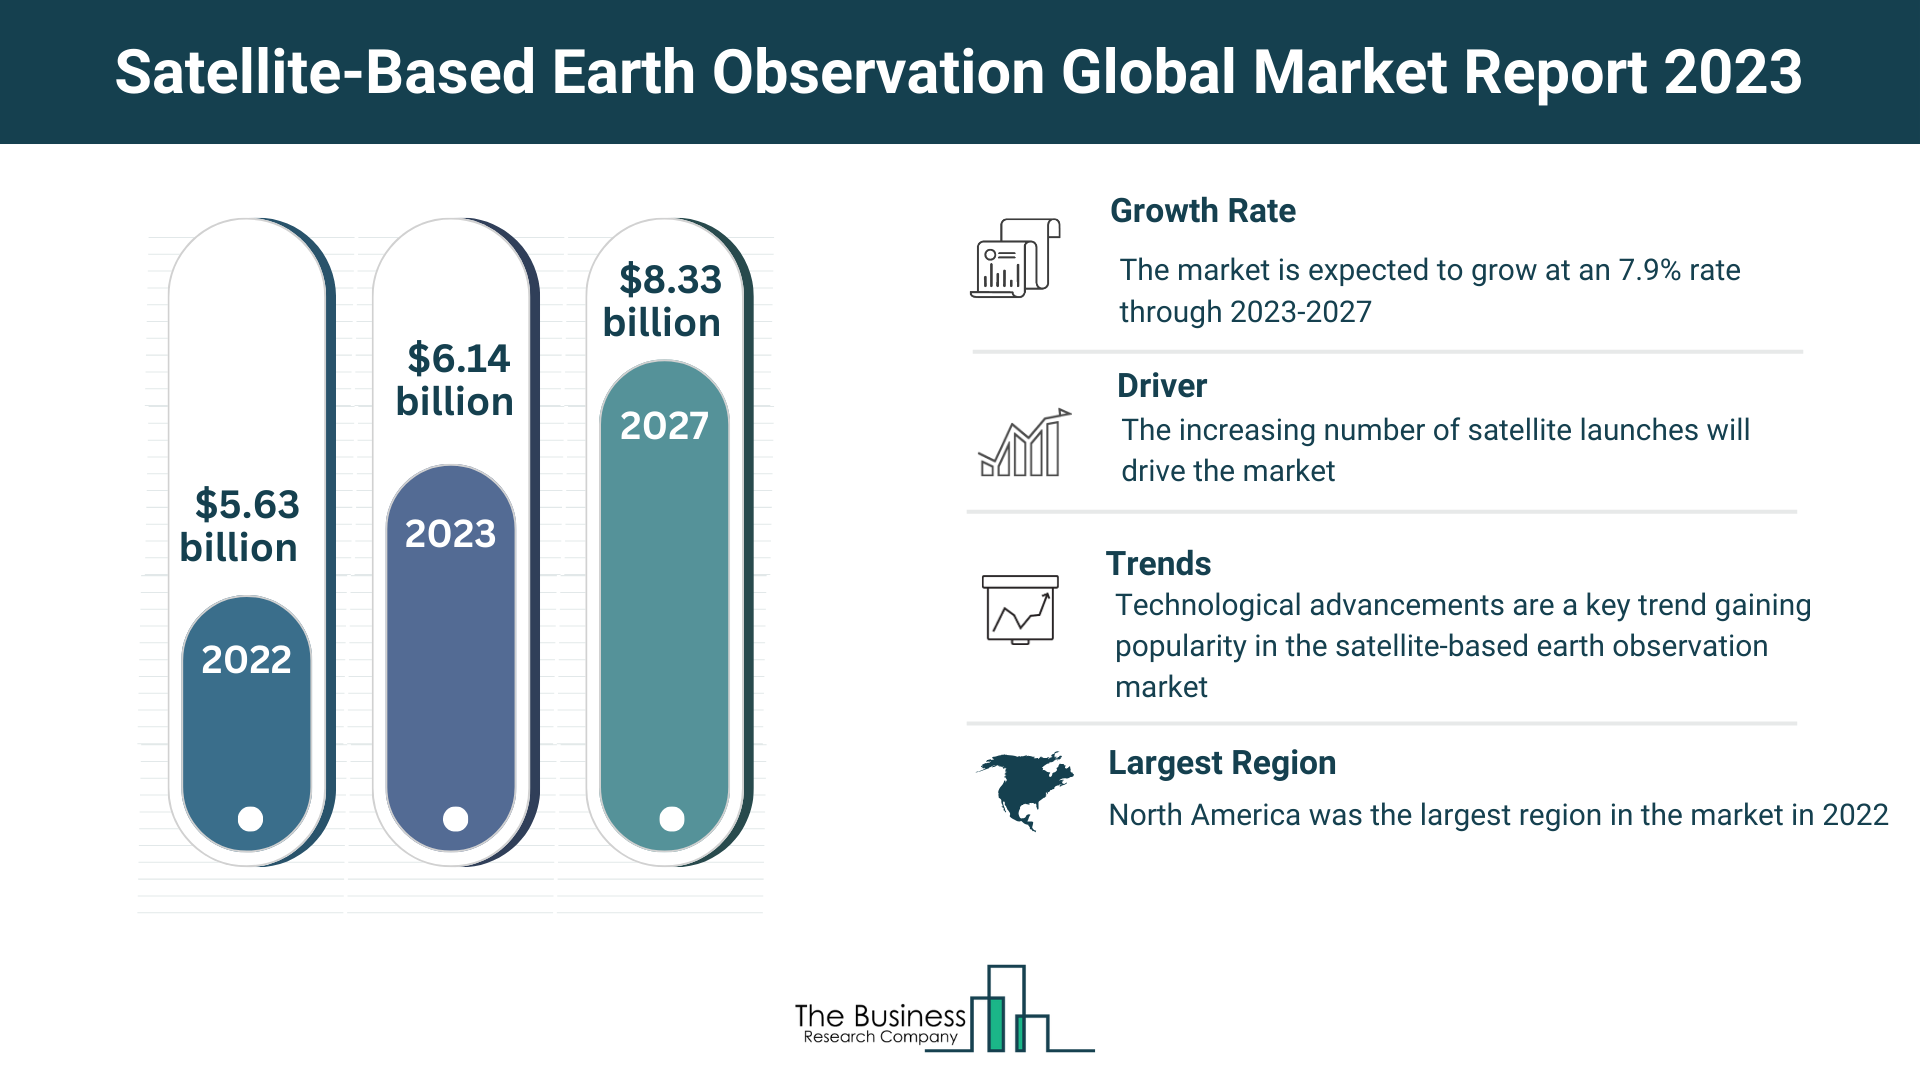 Global Satellite-Based Earth Observation Market